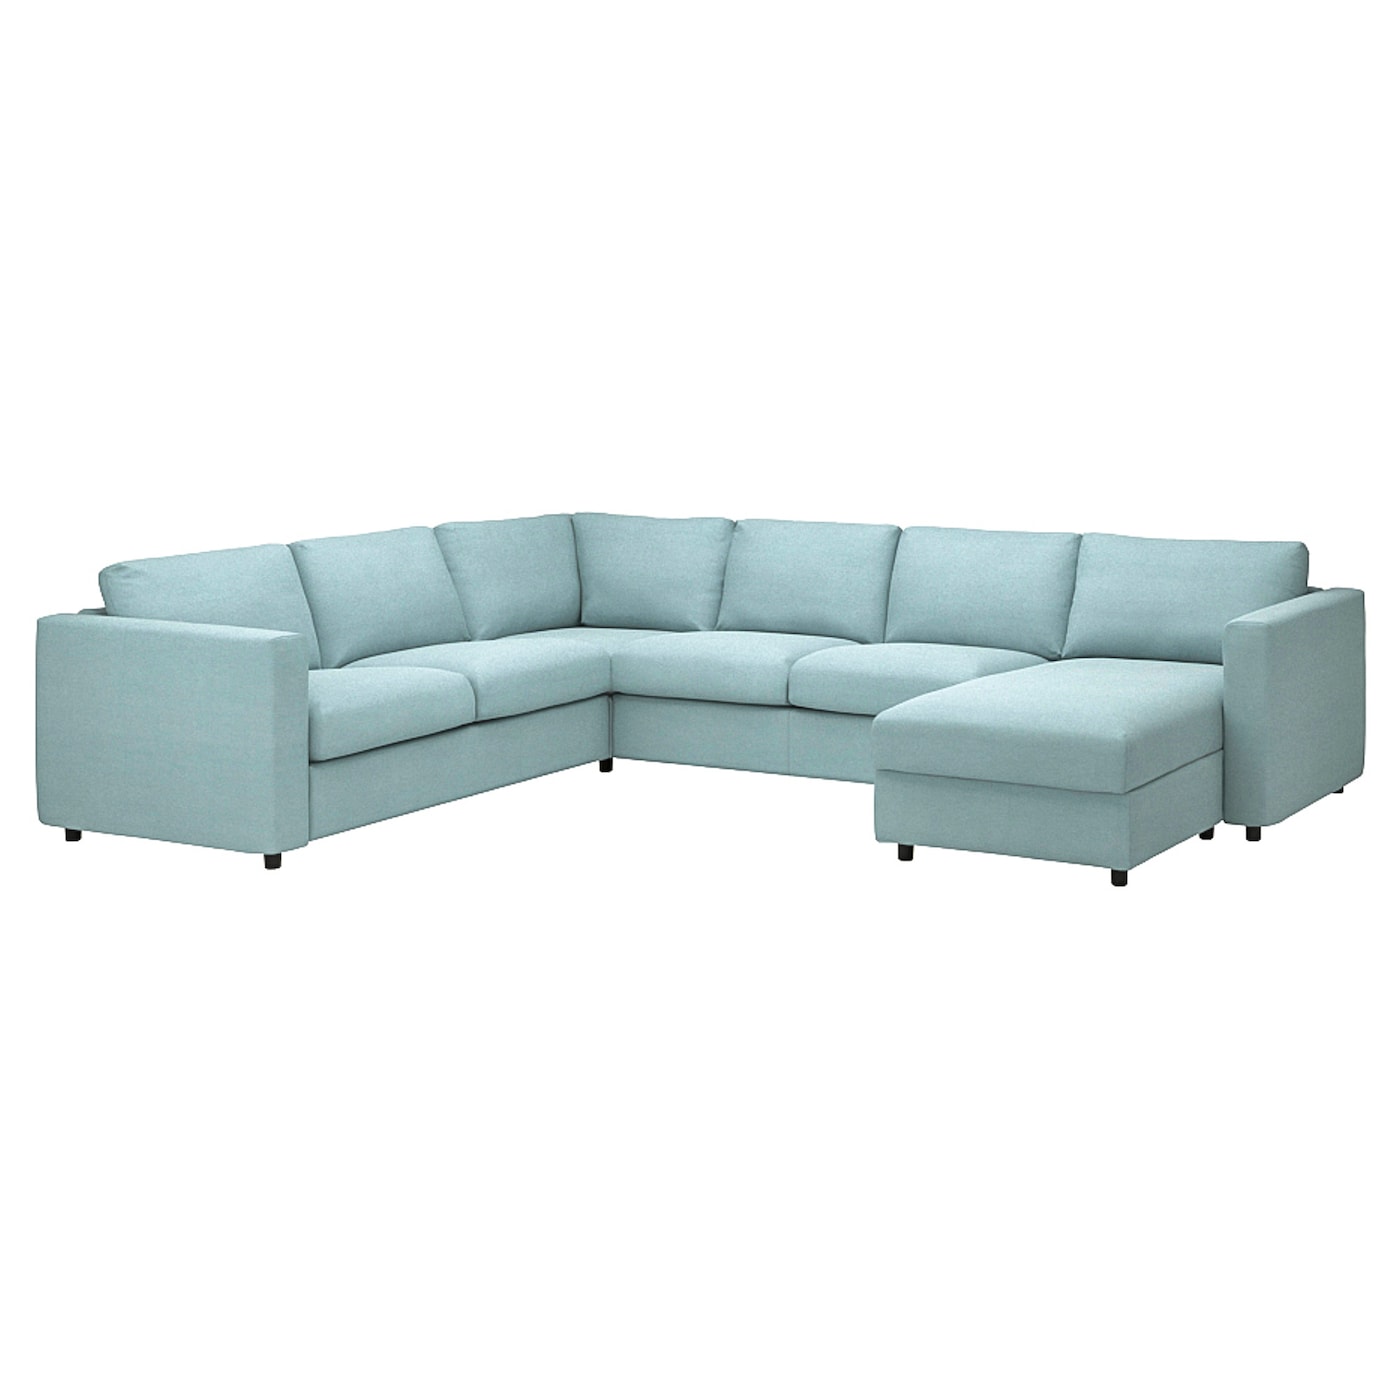 ВИМЛЕ Диван угловой, 5-местный. диван+диван, с диваном/Saxemara светло-синий VIMLE IKEA диван офисный угловой стандартный